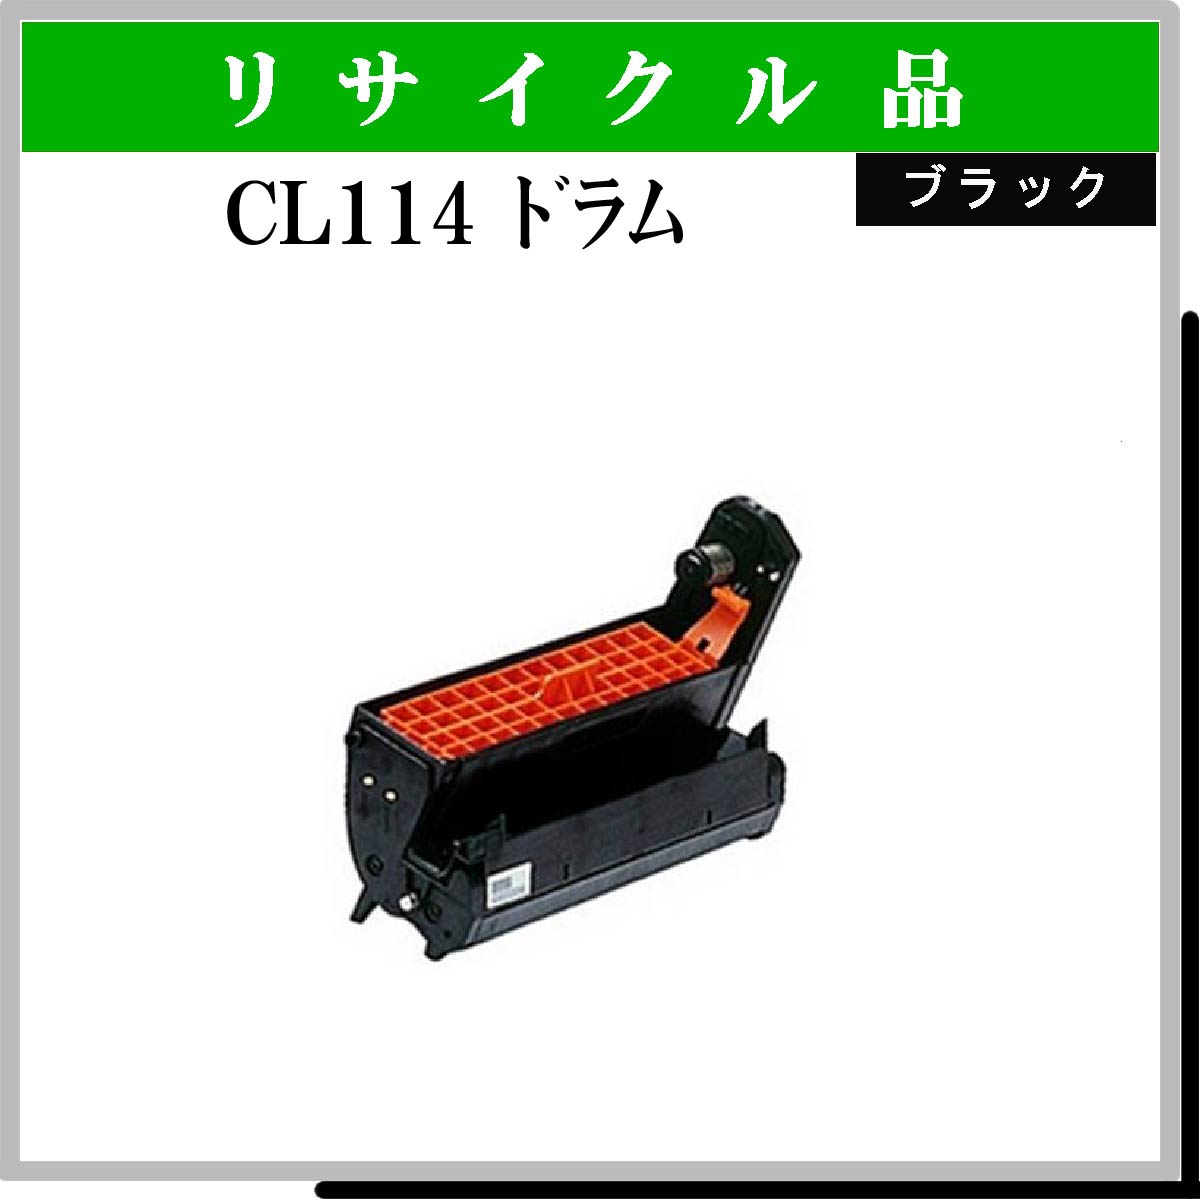 CL114 ﾄﾞﾗﾑ ﾌﾞﾗｯｸ